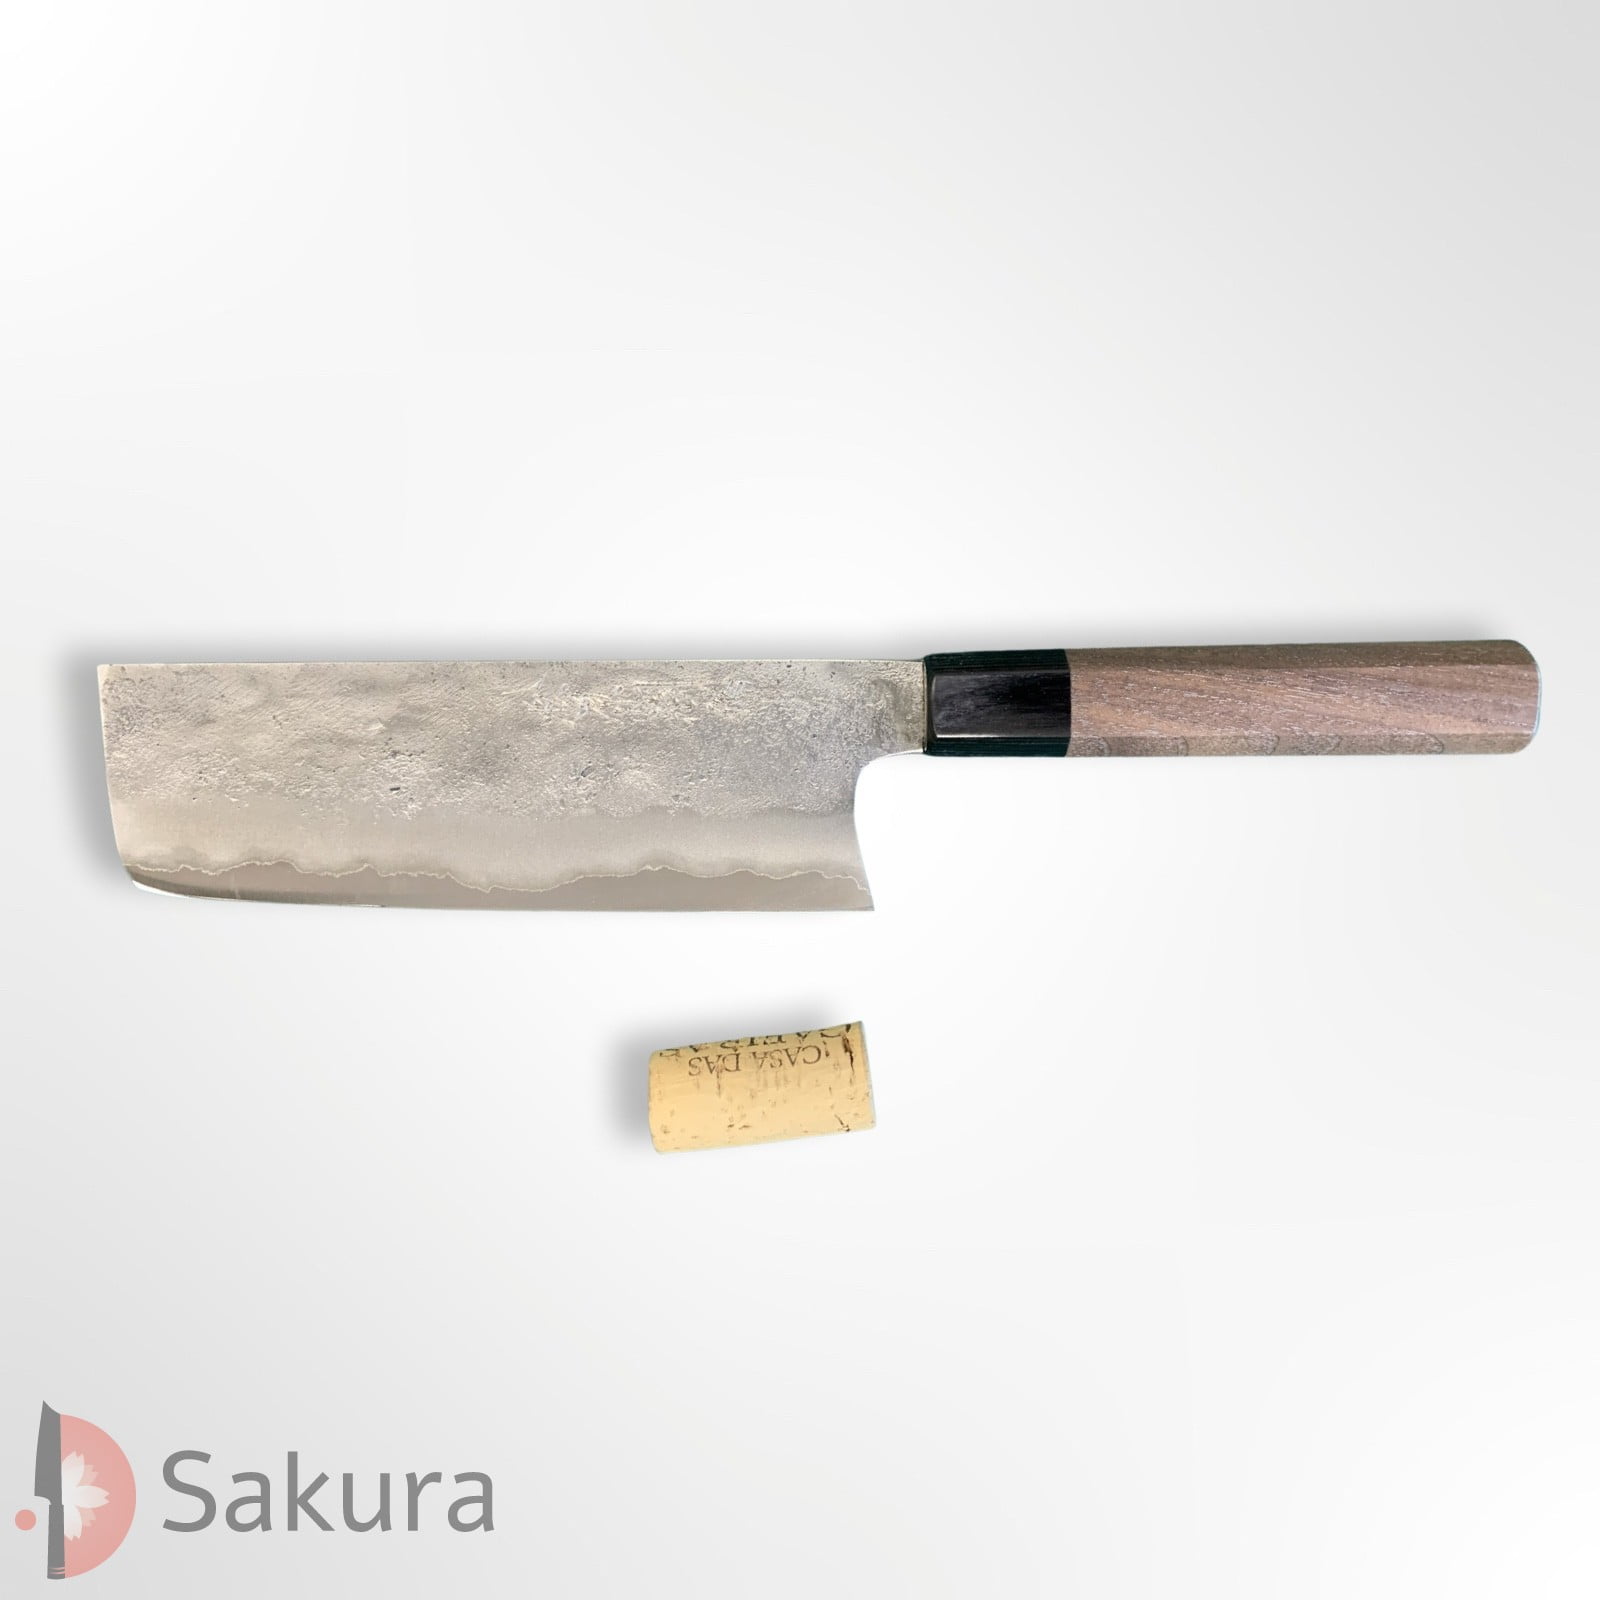 סכין ירקות נַקִירִי 165מ״מ מחושלת בעבודת יד 3 שכבות: פלדת פחמן יפנית מתקדמת מסוג Aogami#2 עטופה פלדת אל-חלד  גימור מט חיספוס טבעי מאצוברה יפן – SKMATSTKKNBN16542